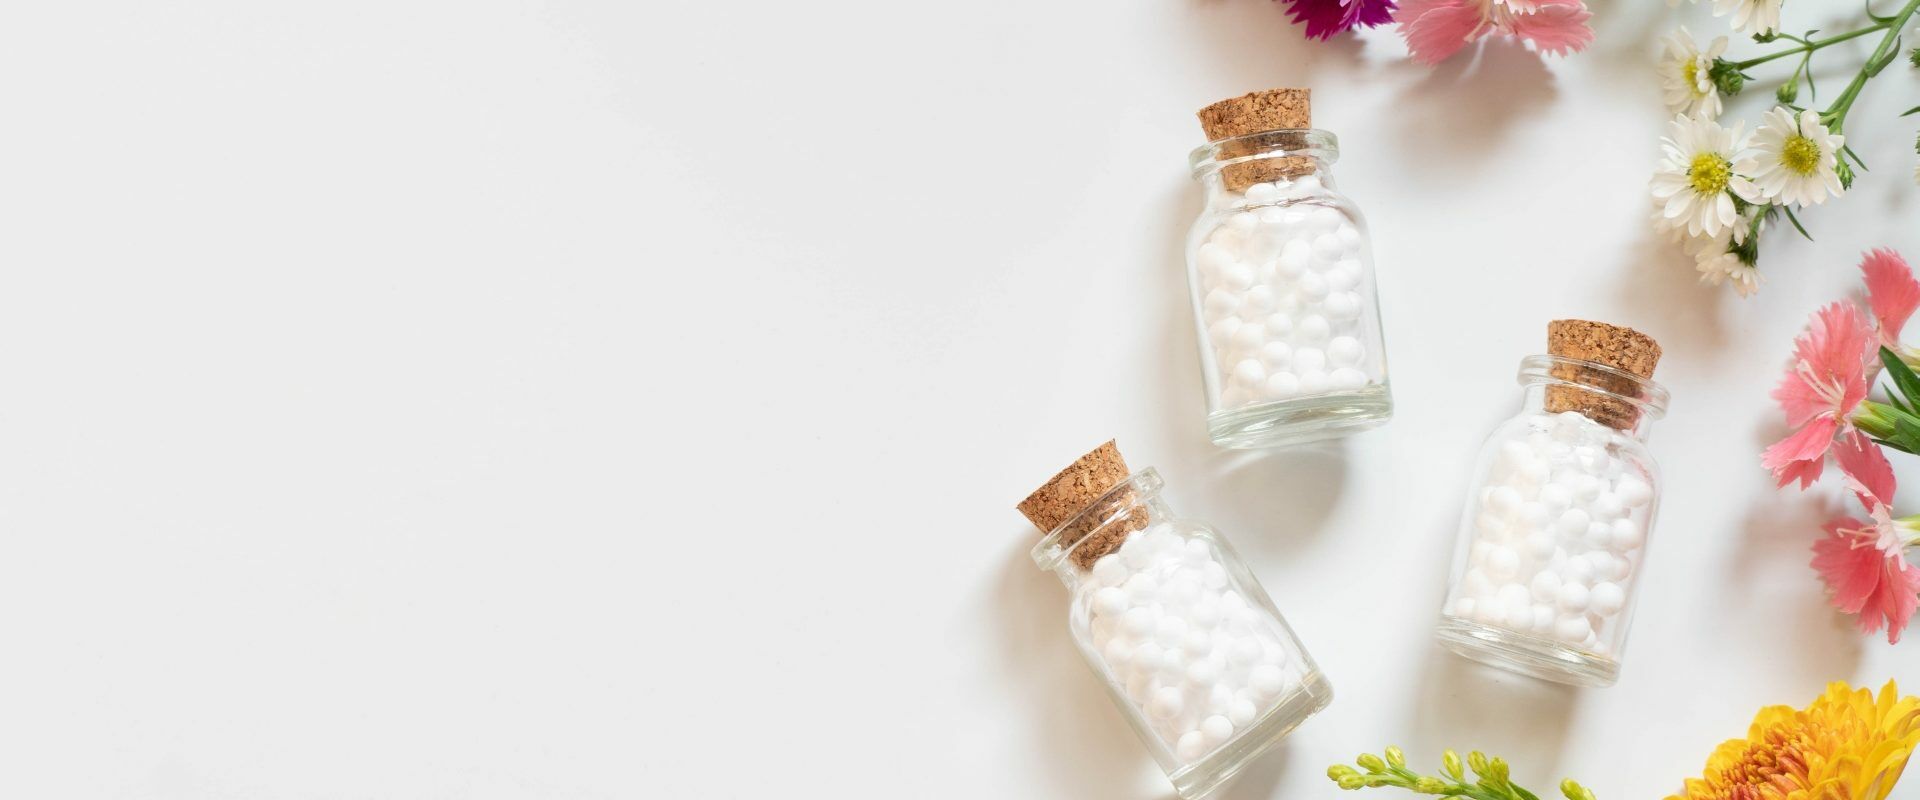 Homeopatia na niestrawność. Leki homeopatyczne w fiolkach, leżące na płasko na białym blacie. Obok leżą kwiaty.